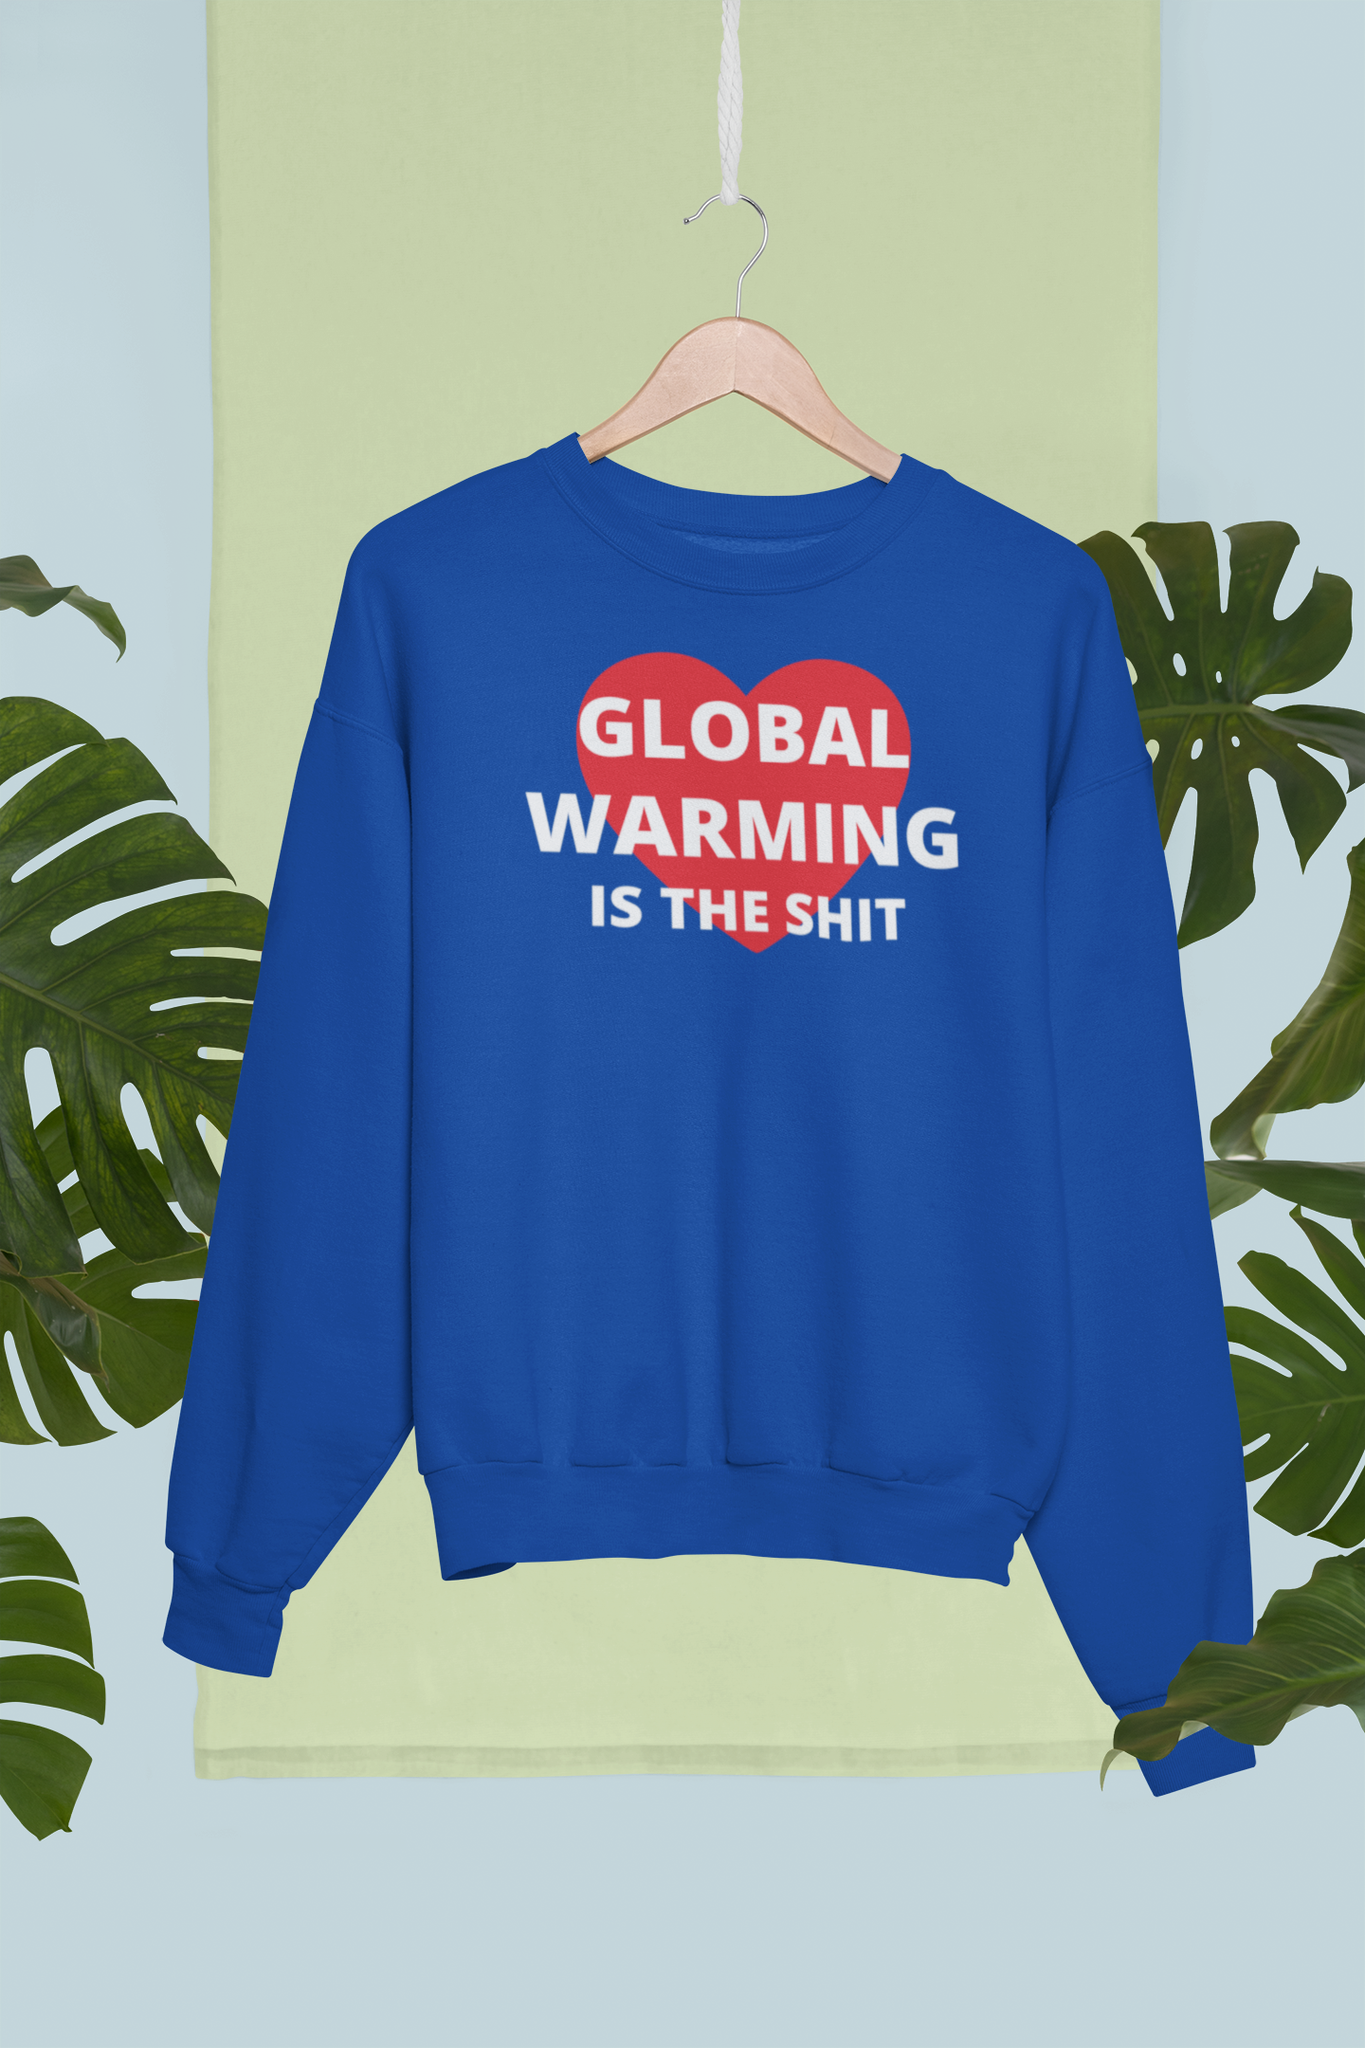 Greta Thunberg & Global Uppvärmning, Skolstrejk för klimatet, Global Warming is the shit. Sweatshirt Klimat, Unisex Modell